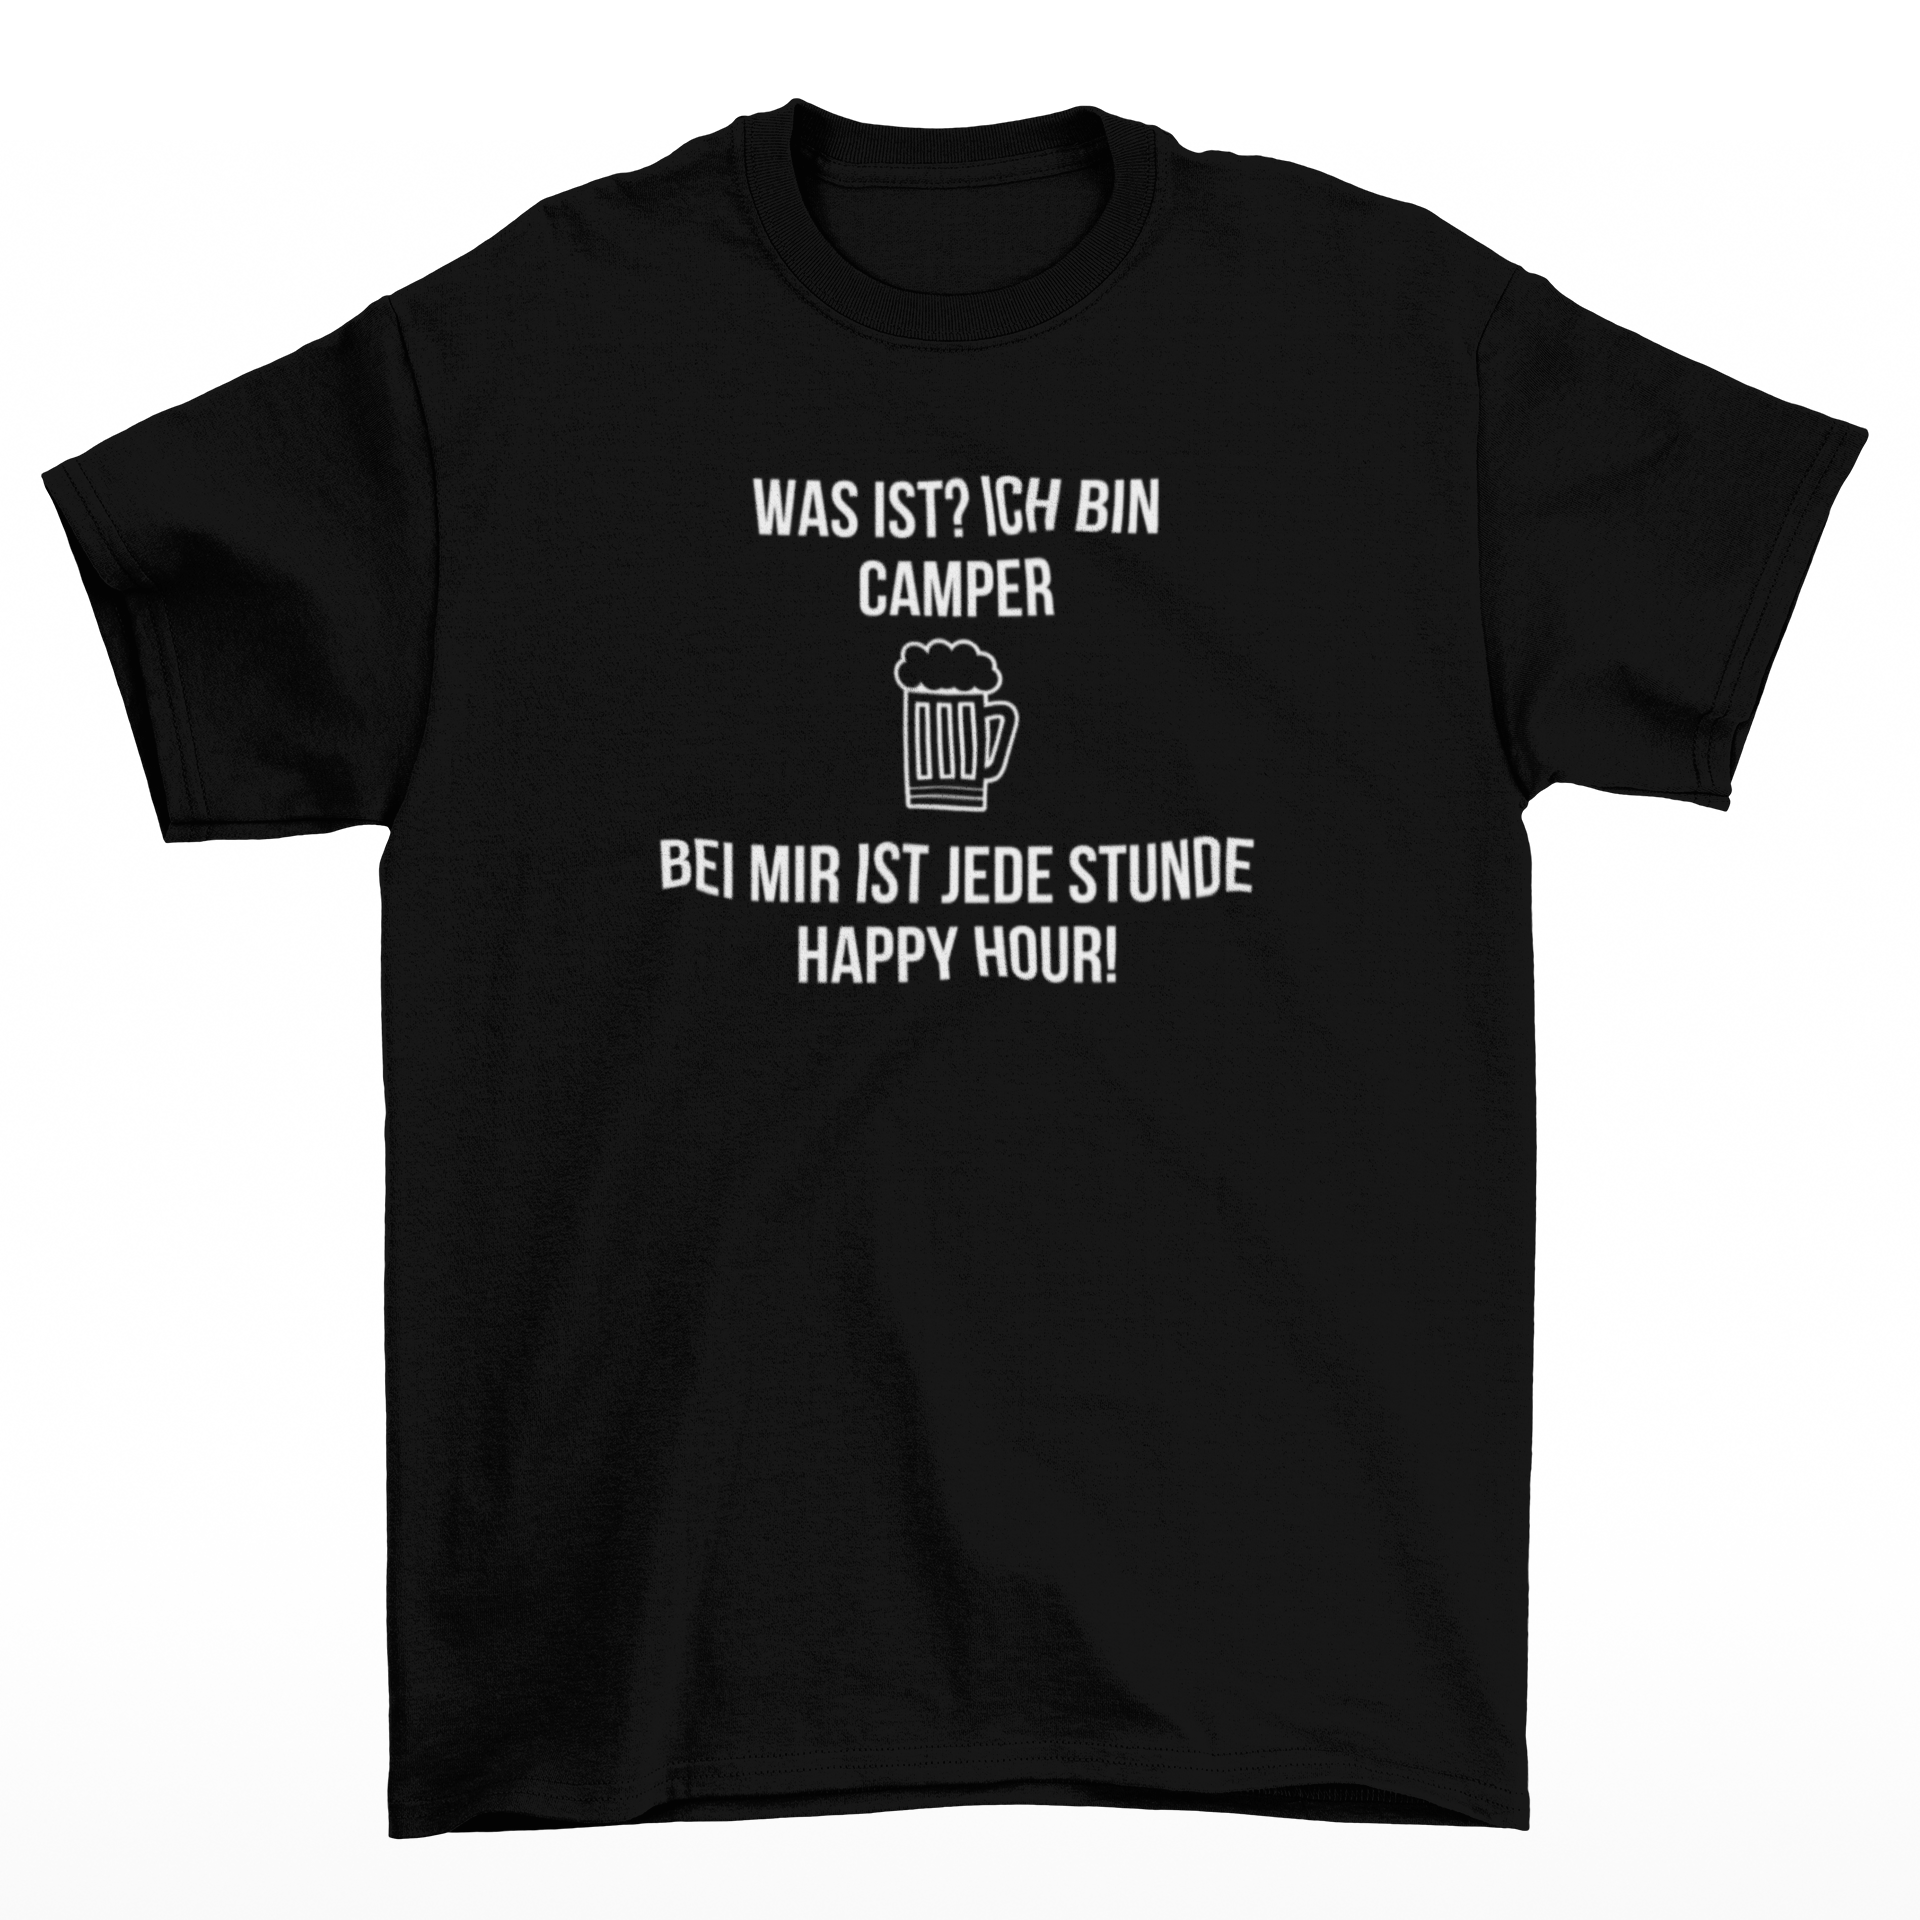 Was ist? ich bin Camper  - T-Shirt